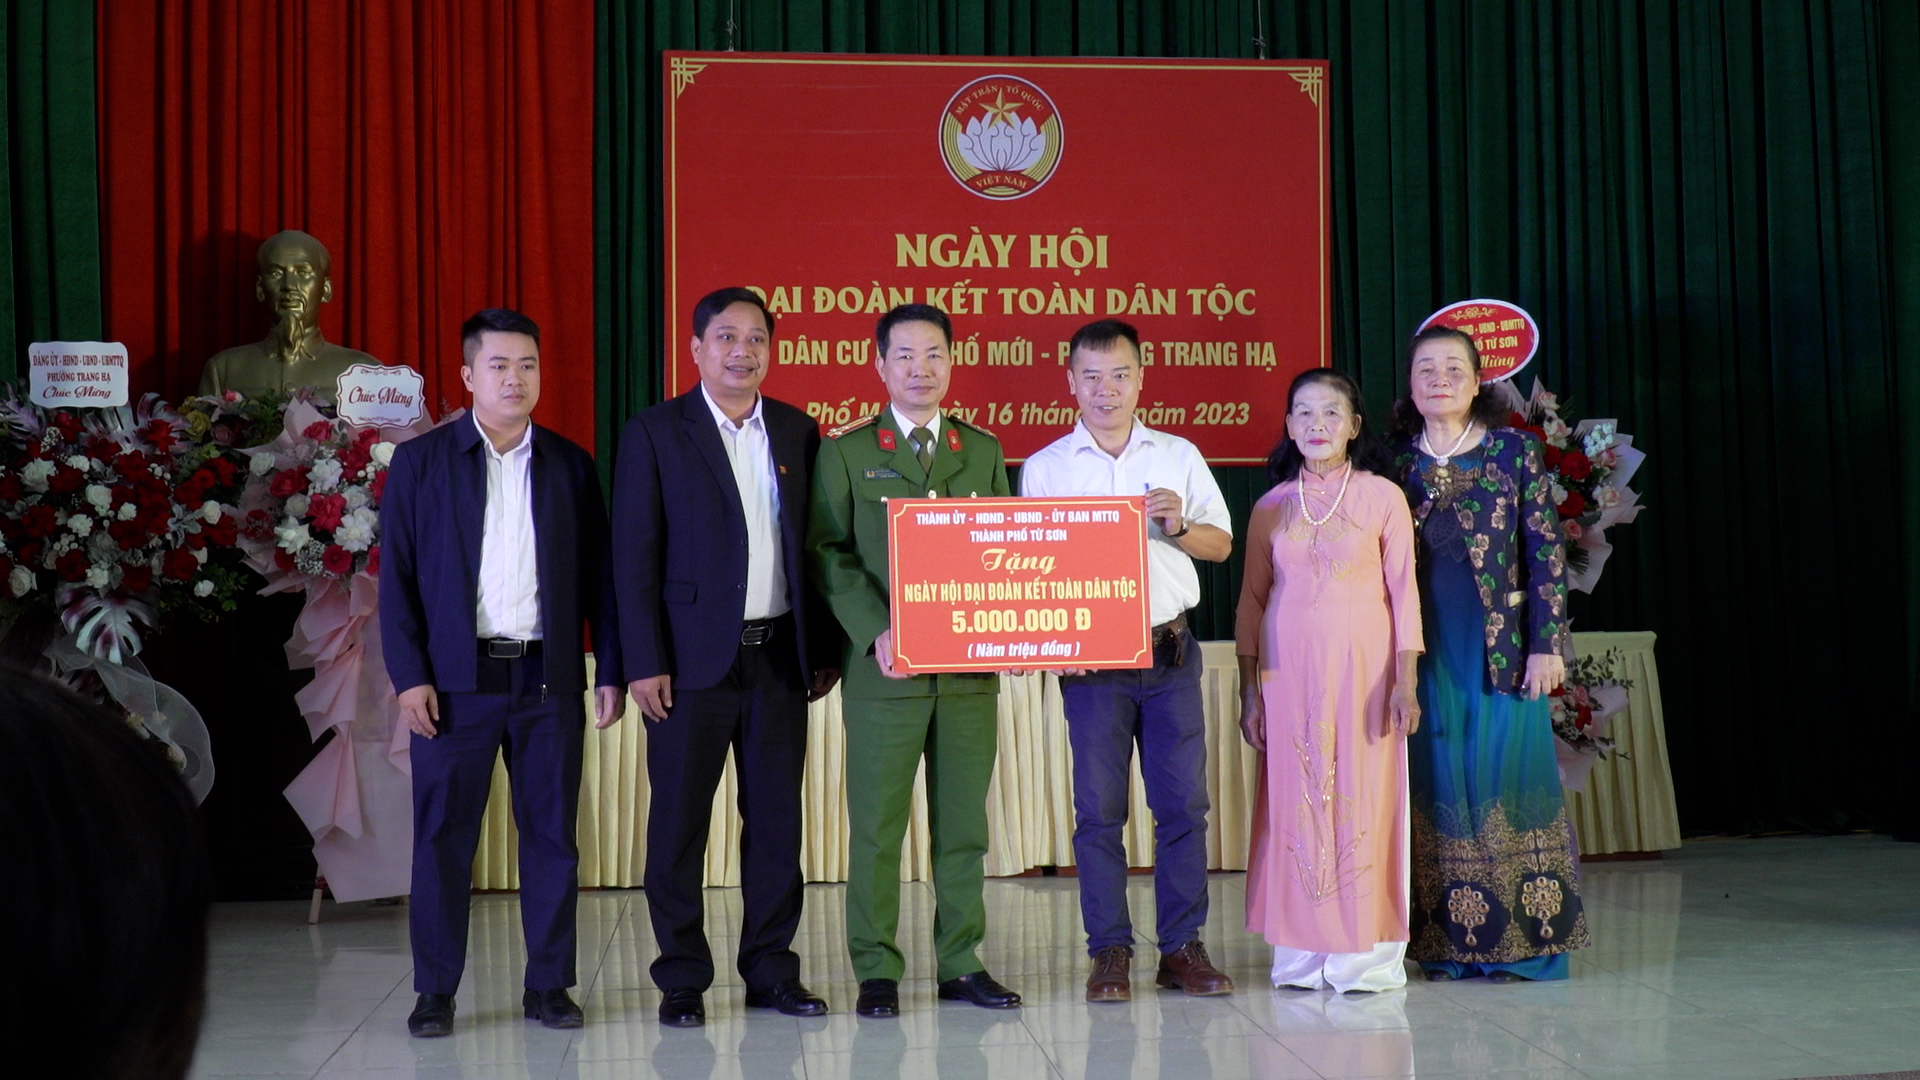 Khu phố mới phường Trang Hạ tổ chức ngày hội ĐĐK toàn dân tộc